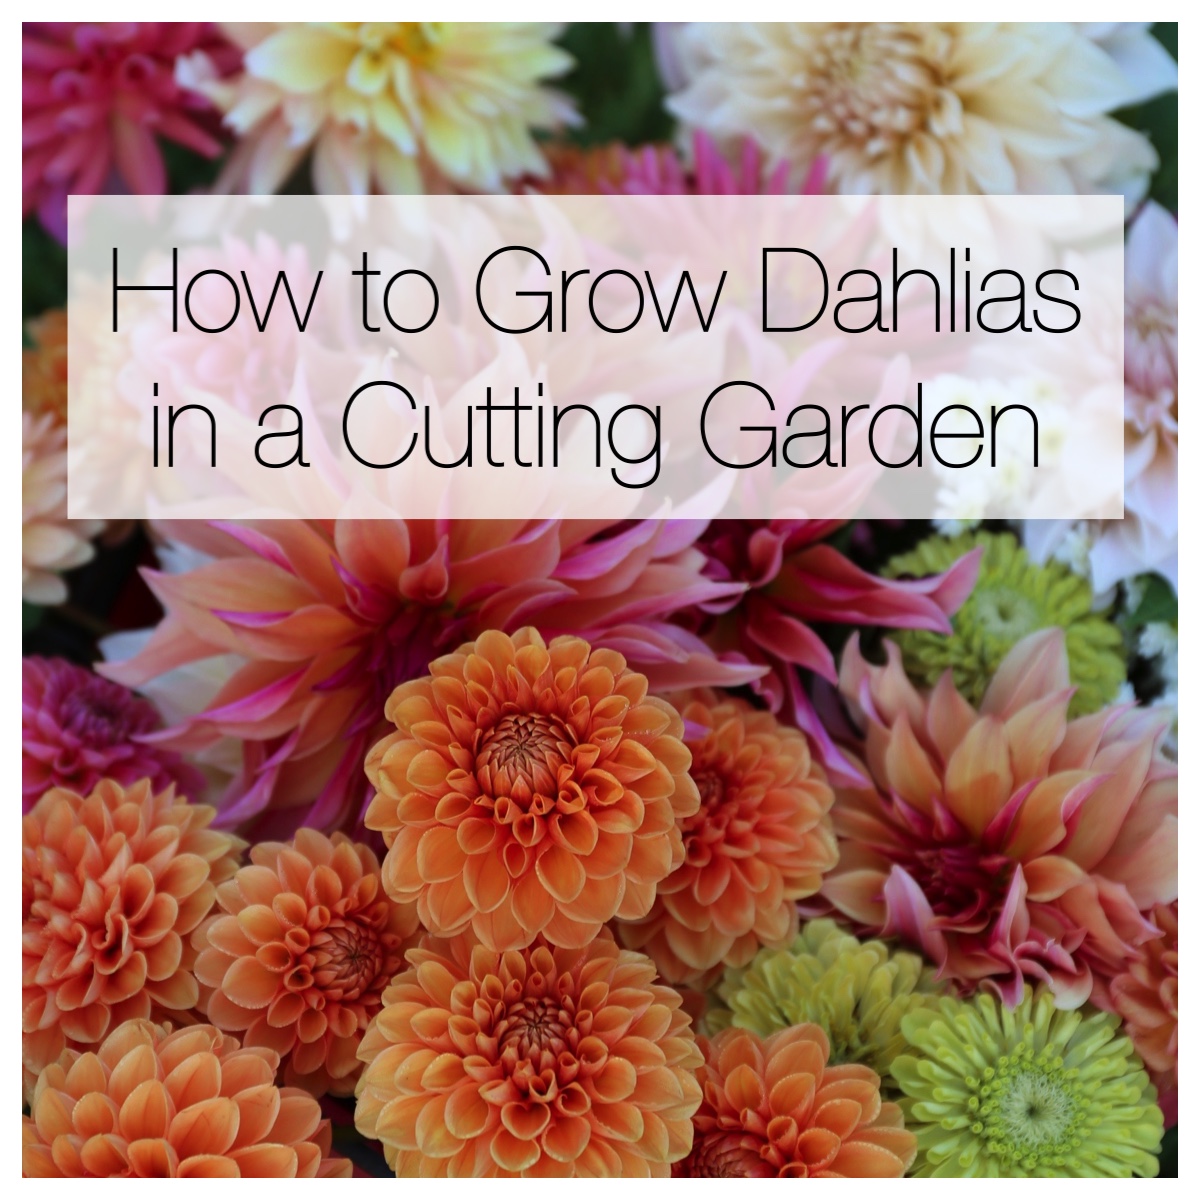 How to Grow Dahlias in a Cutting Garden